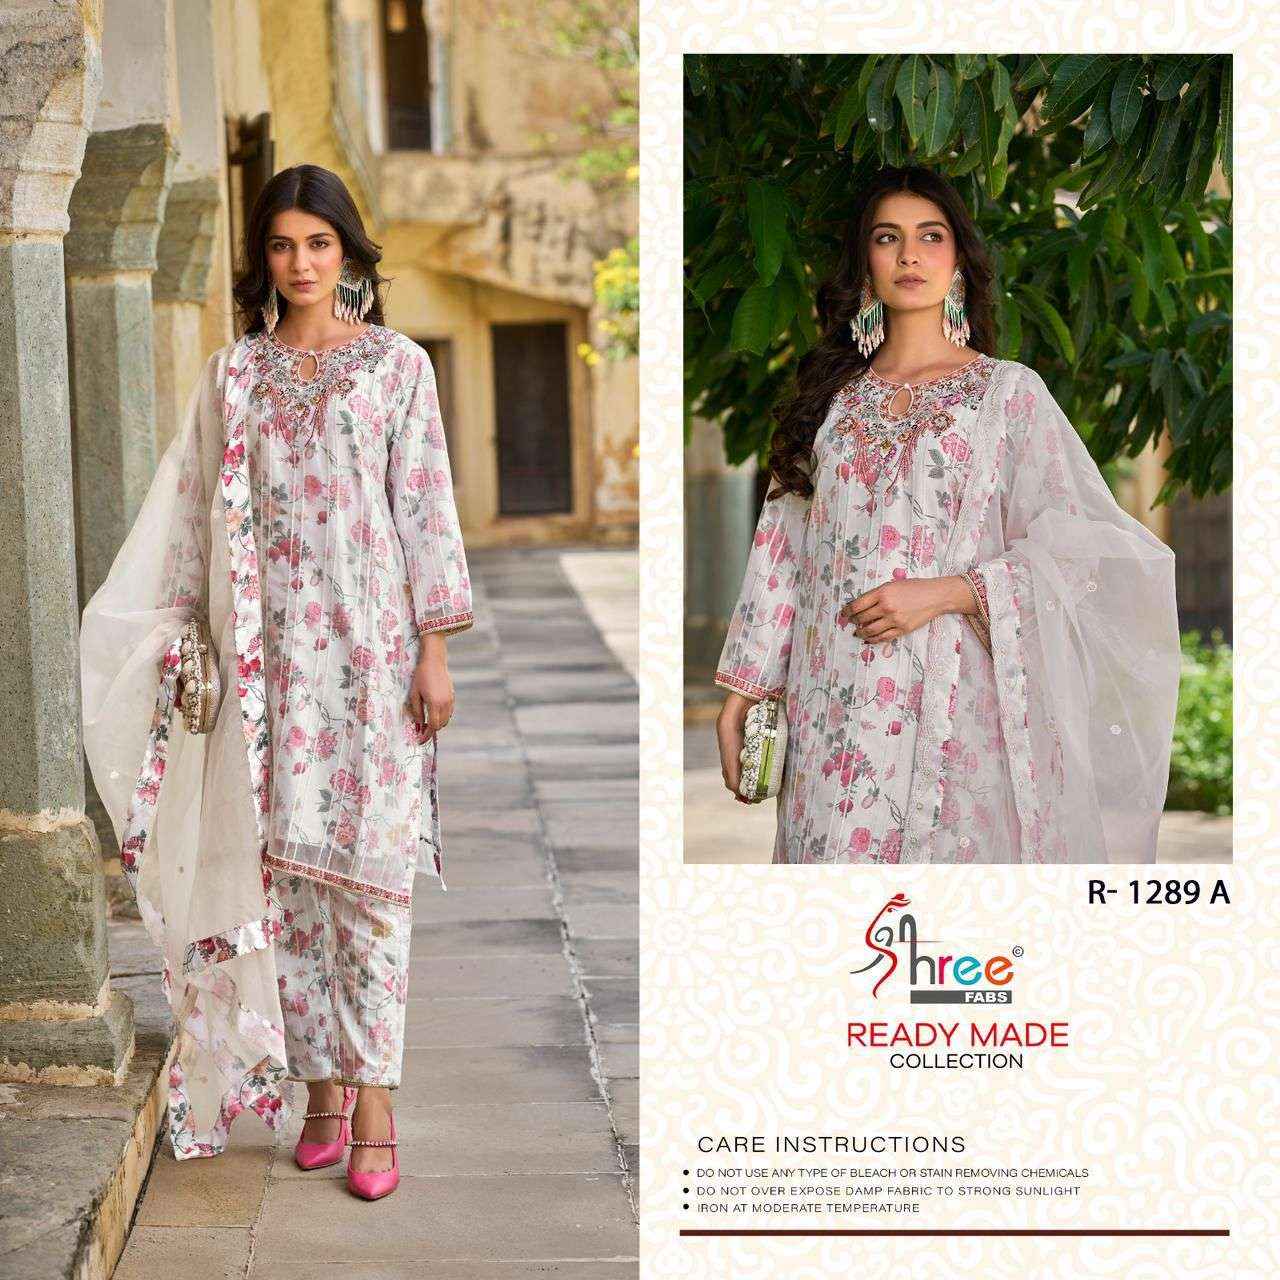 shree Fabs R 1289 Colors Organza Pakistani Dress Catalog Exporters (4 pcs catalog )